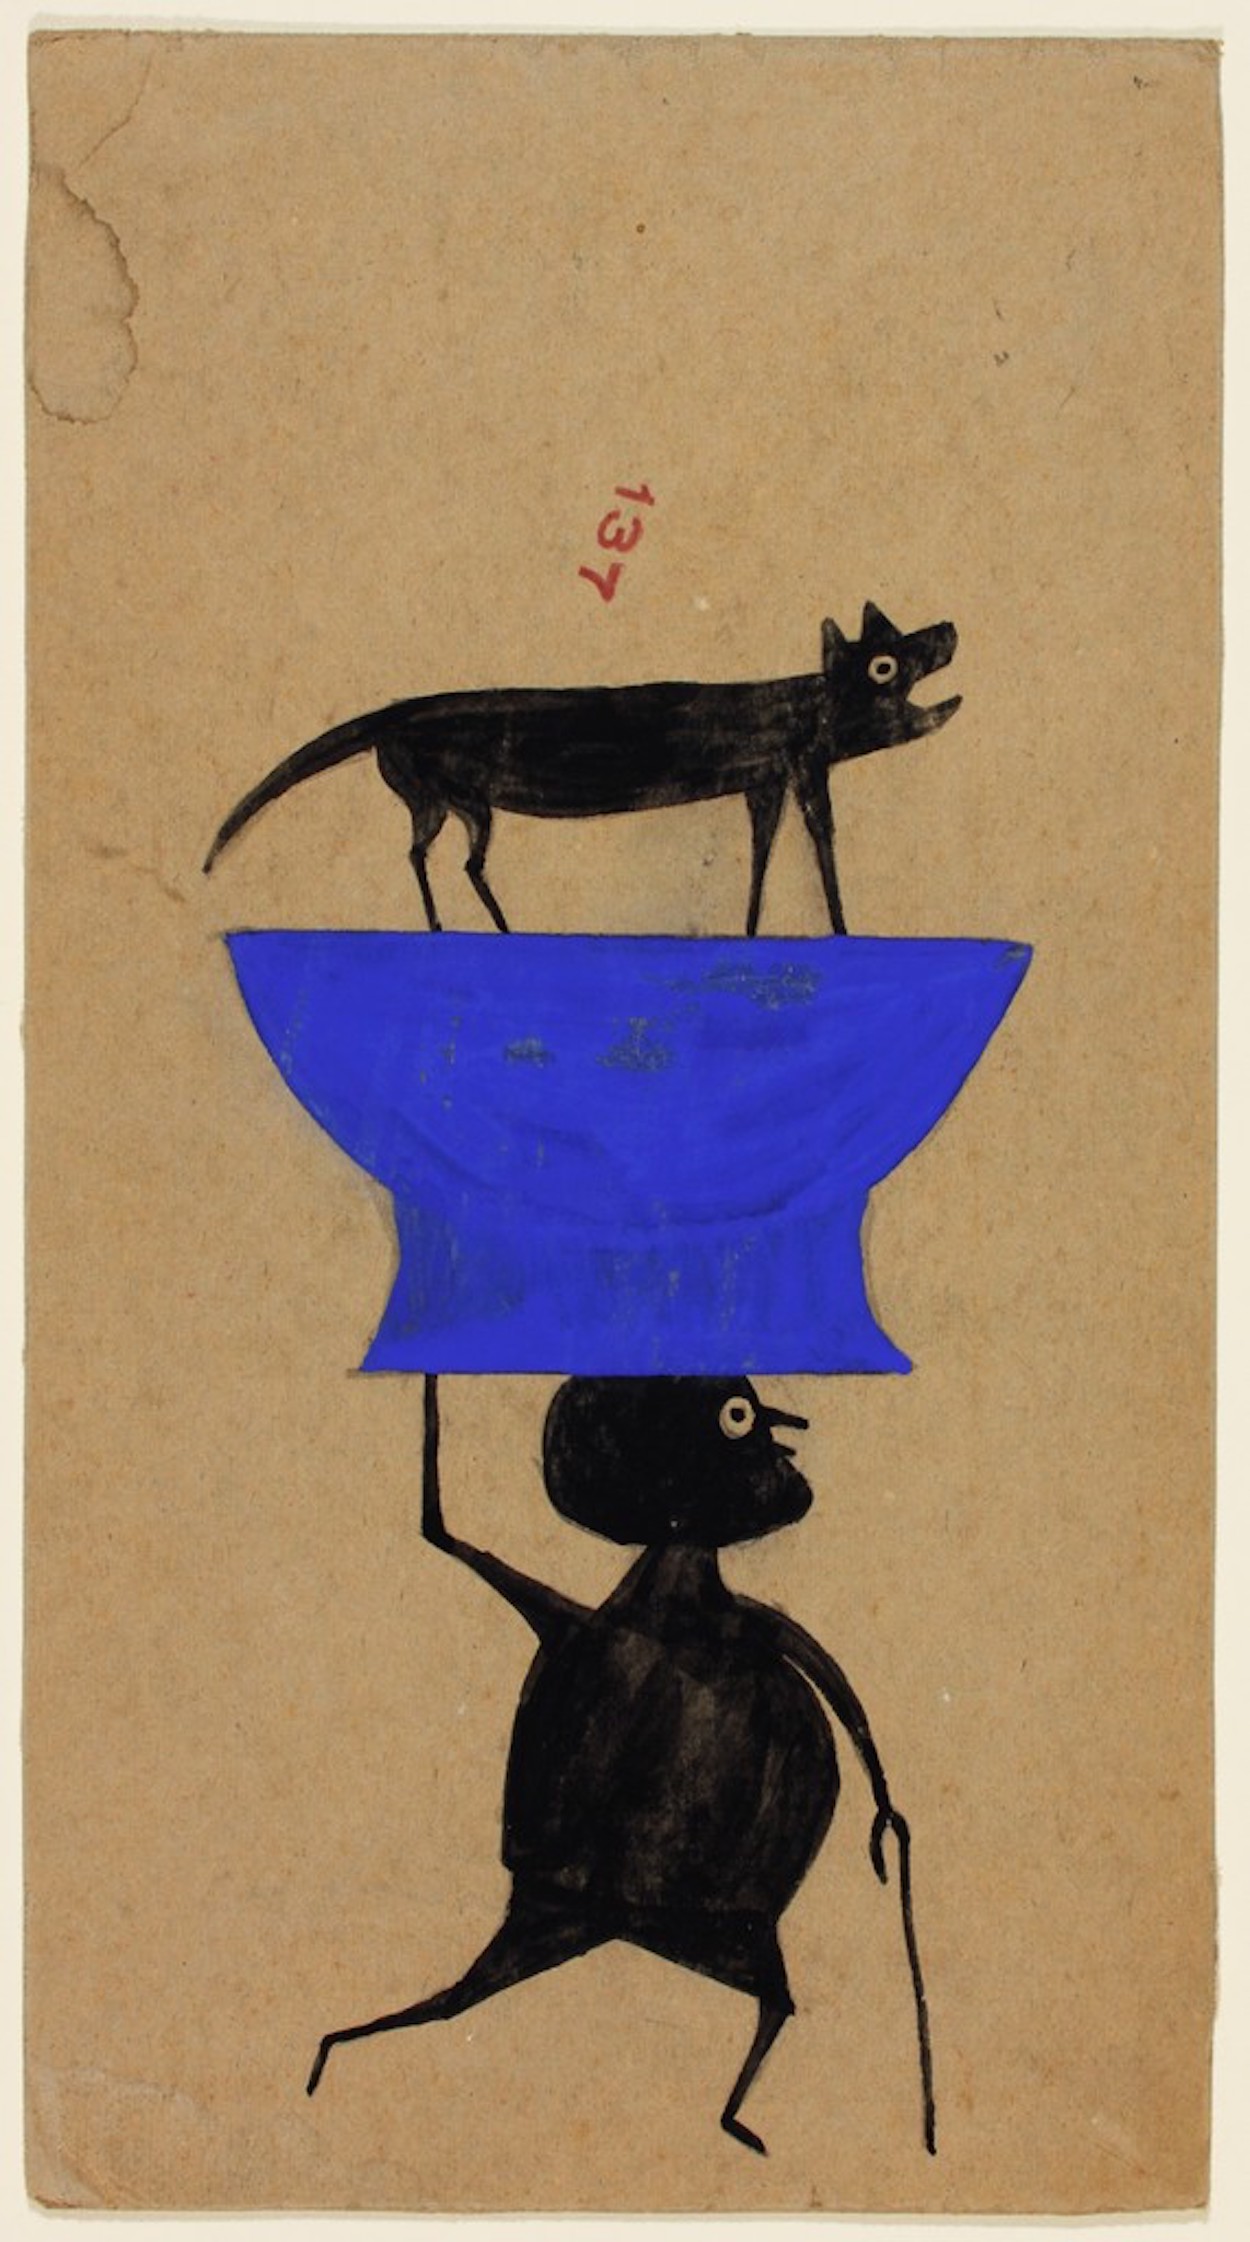 Sans titre (Homme portant un chien sur un objet) by Bill Traylor - Vers 1939–1942 - 33.6 x 18.4 cm High Museum of Art